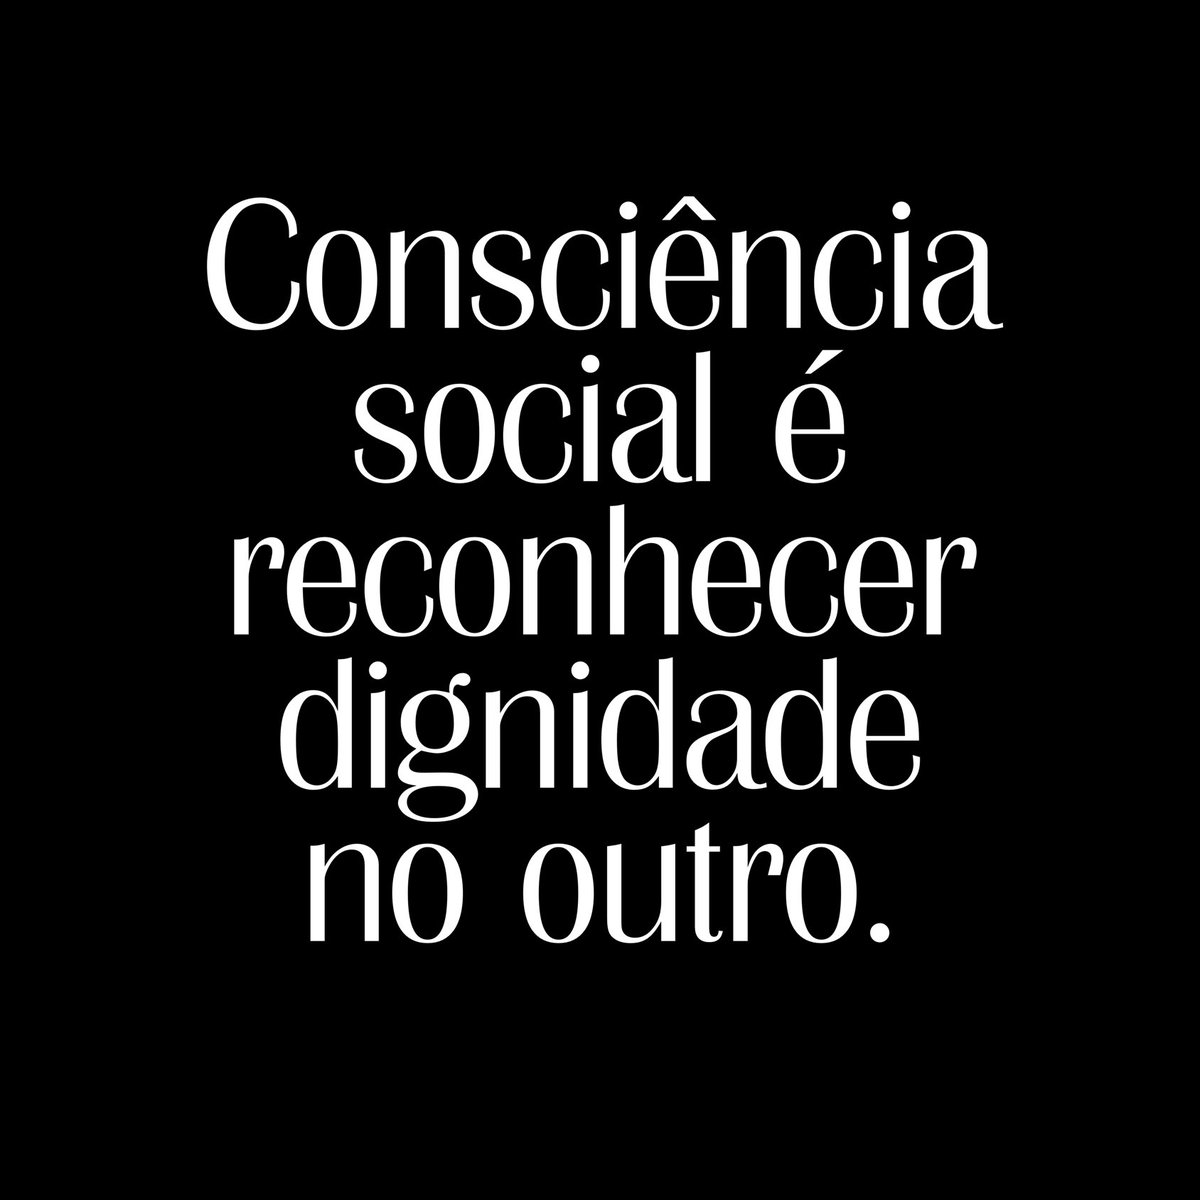 ‘Consciência social é reconhecer dignidade no outro.’